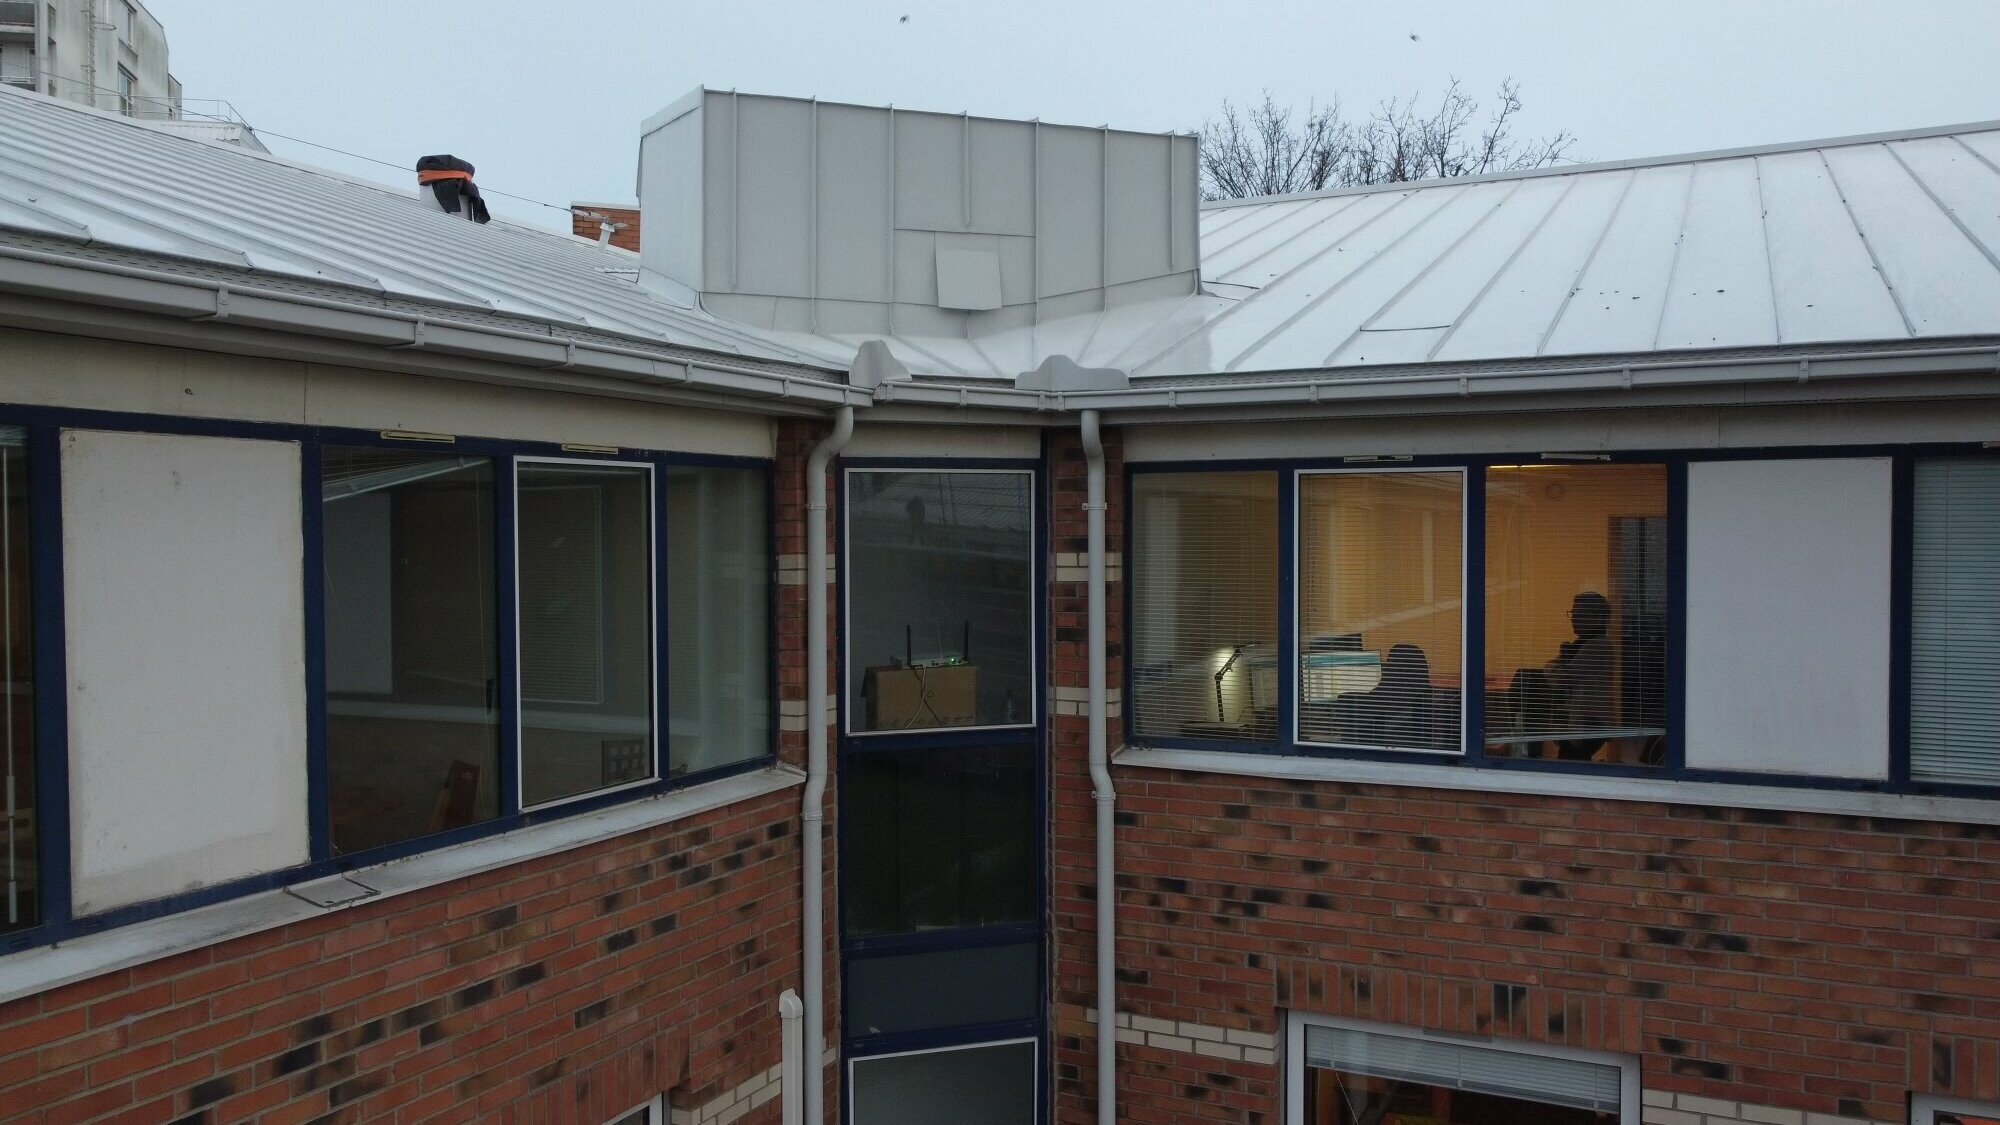 Vue de face du bâtiment où l'on voit le mariage de deux matériaux : l'aluminium et la brique